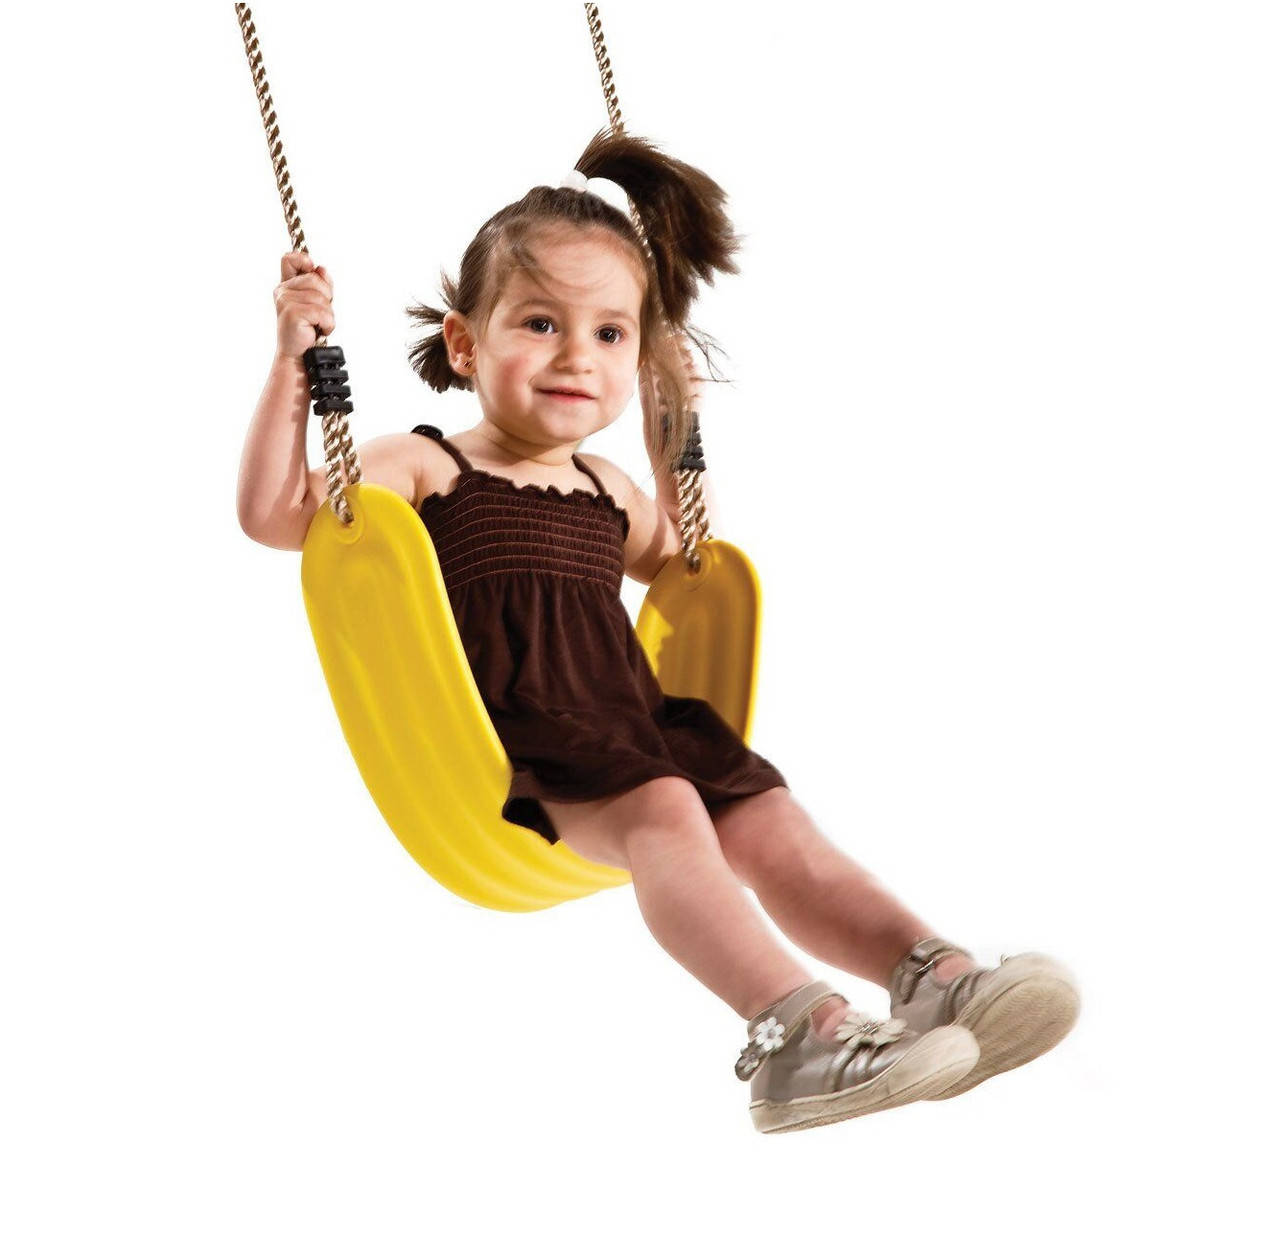 

Детские подвесные качели "Флекси". Эластичное сиденье для качелей 67 см х 15 см. KBT Бельгия, Разные цвета